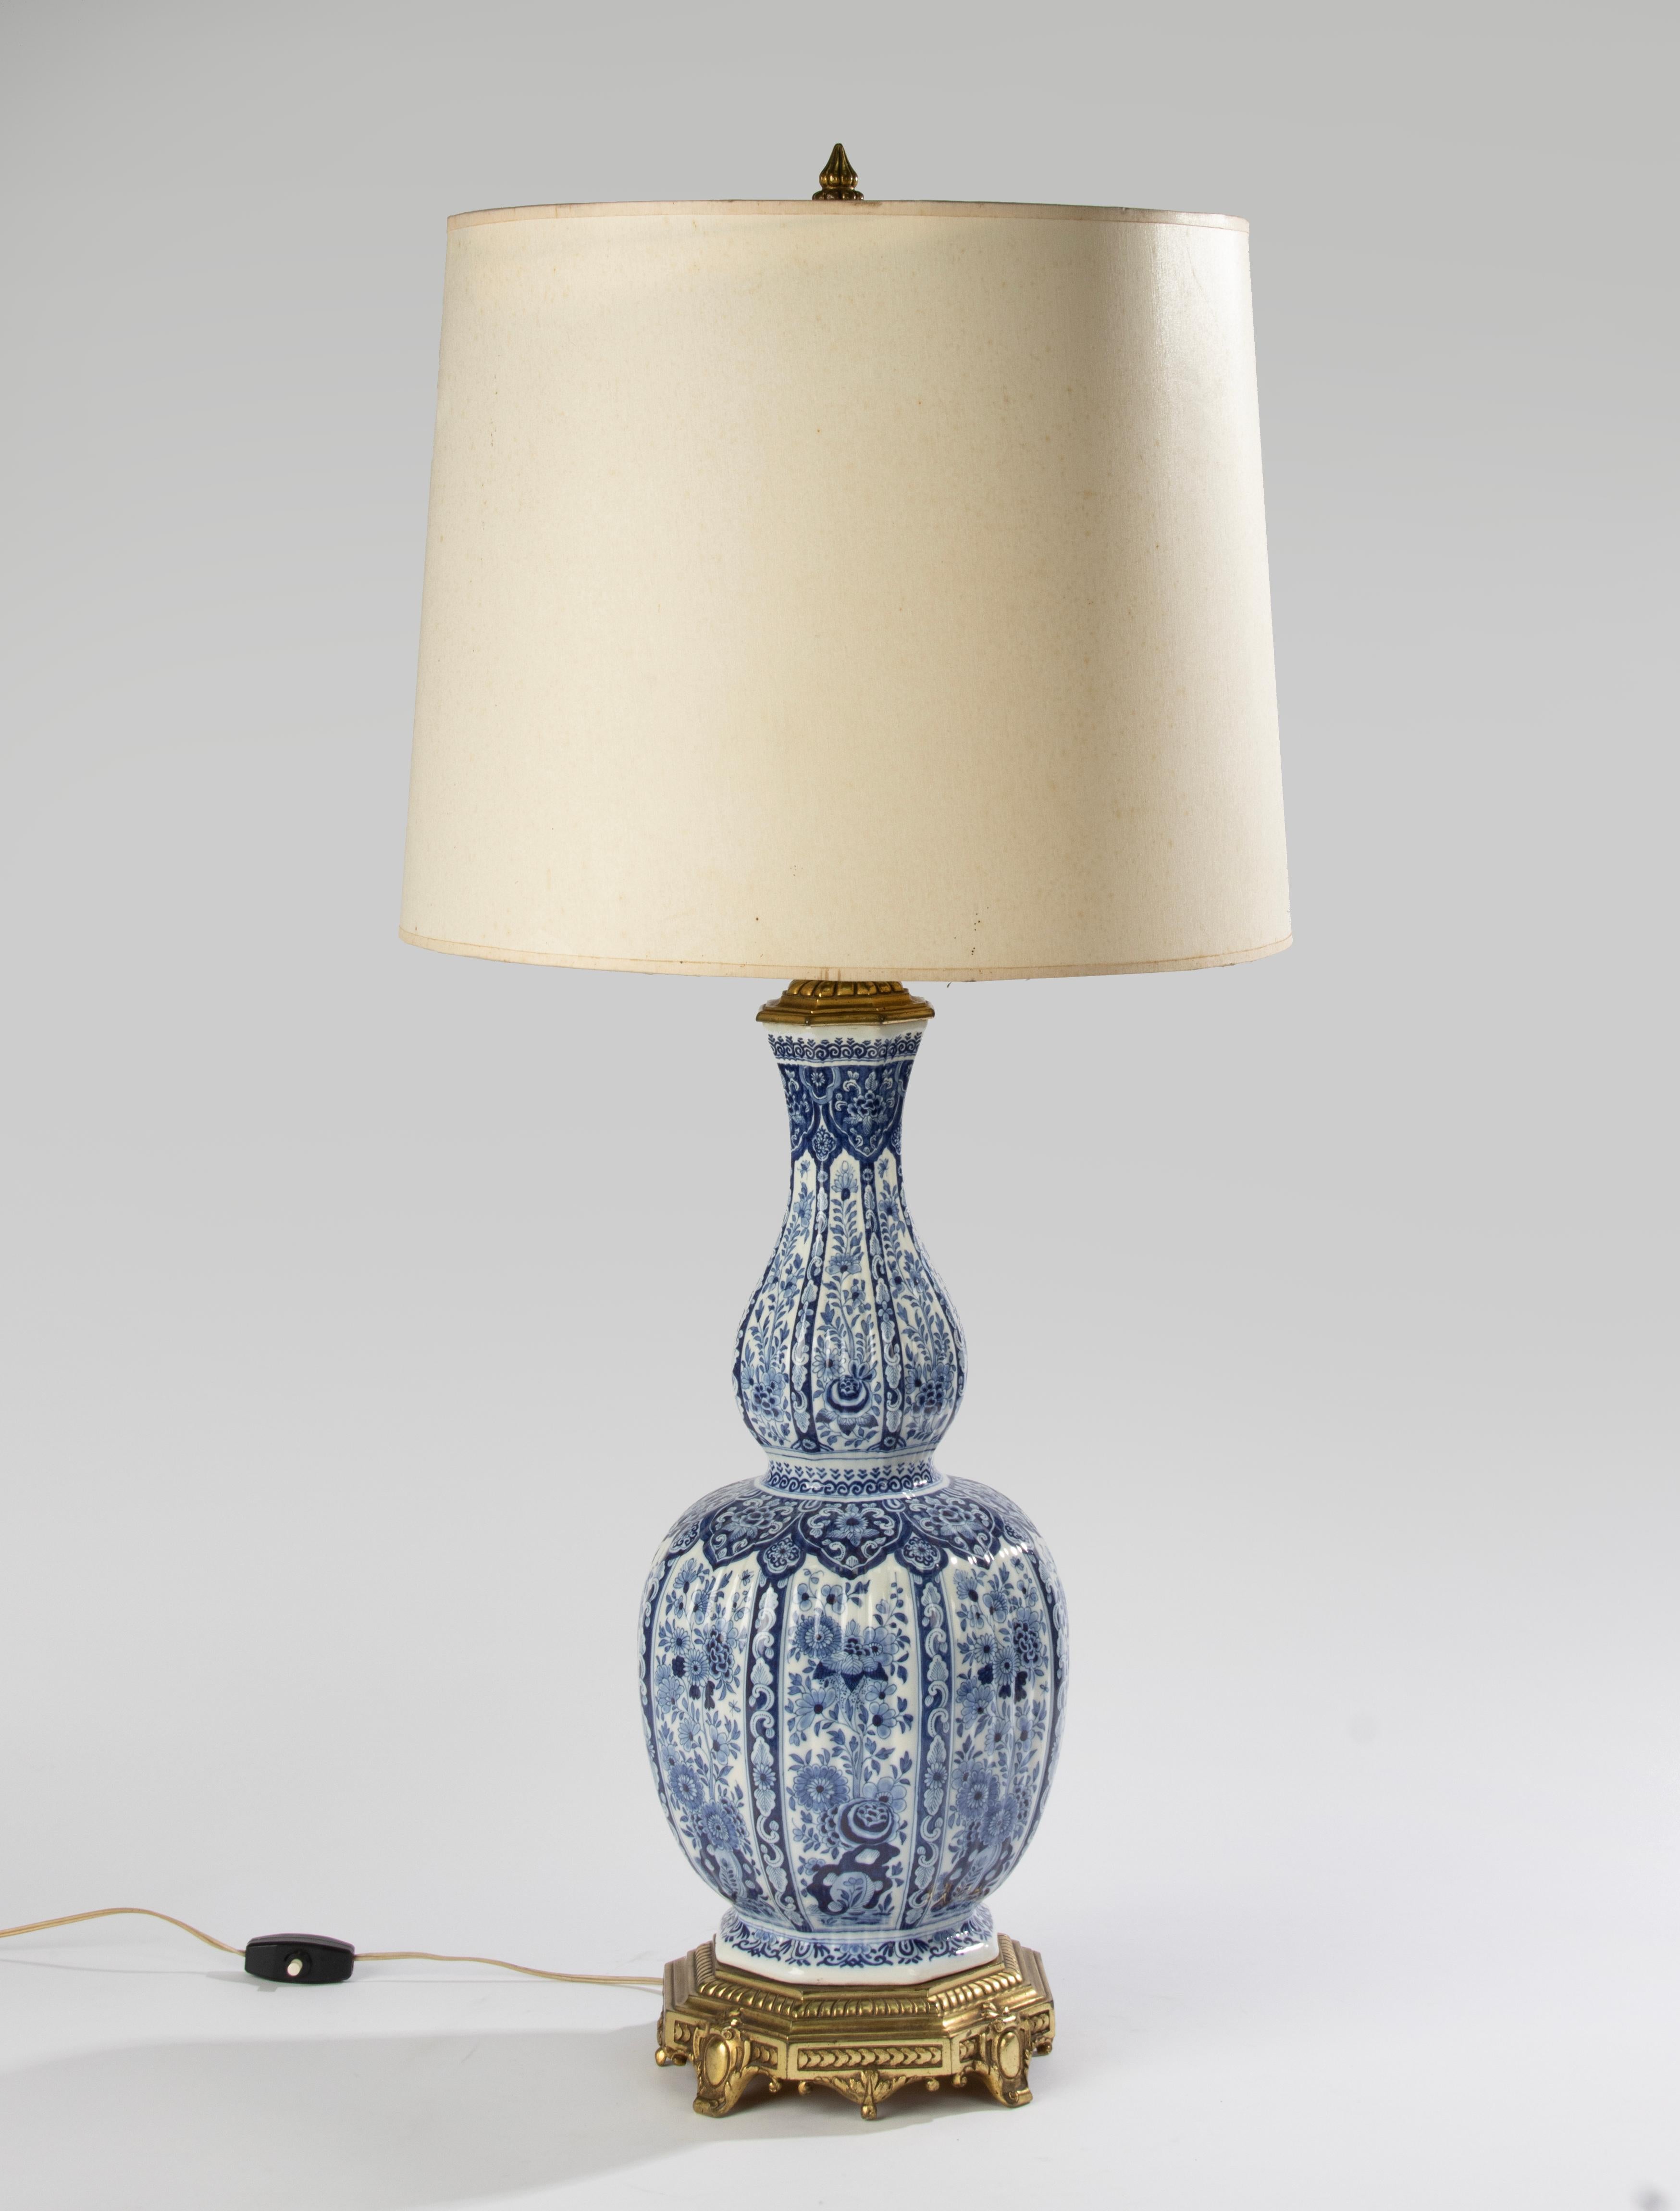 Un magnifique vase ancien en céramique de Delft, qui a ensuite été transformé en lampe de table, dans les années 1960. Le vase en céramique de Delft date d'environ 1880. Il est marqué sur le fond. La céramique est peinte à la main avec de belles